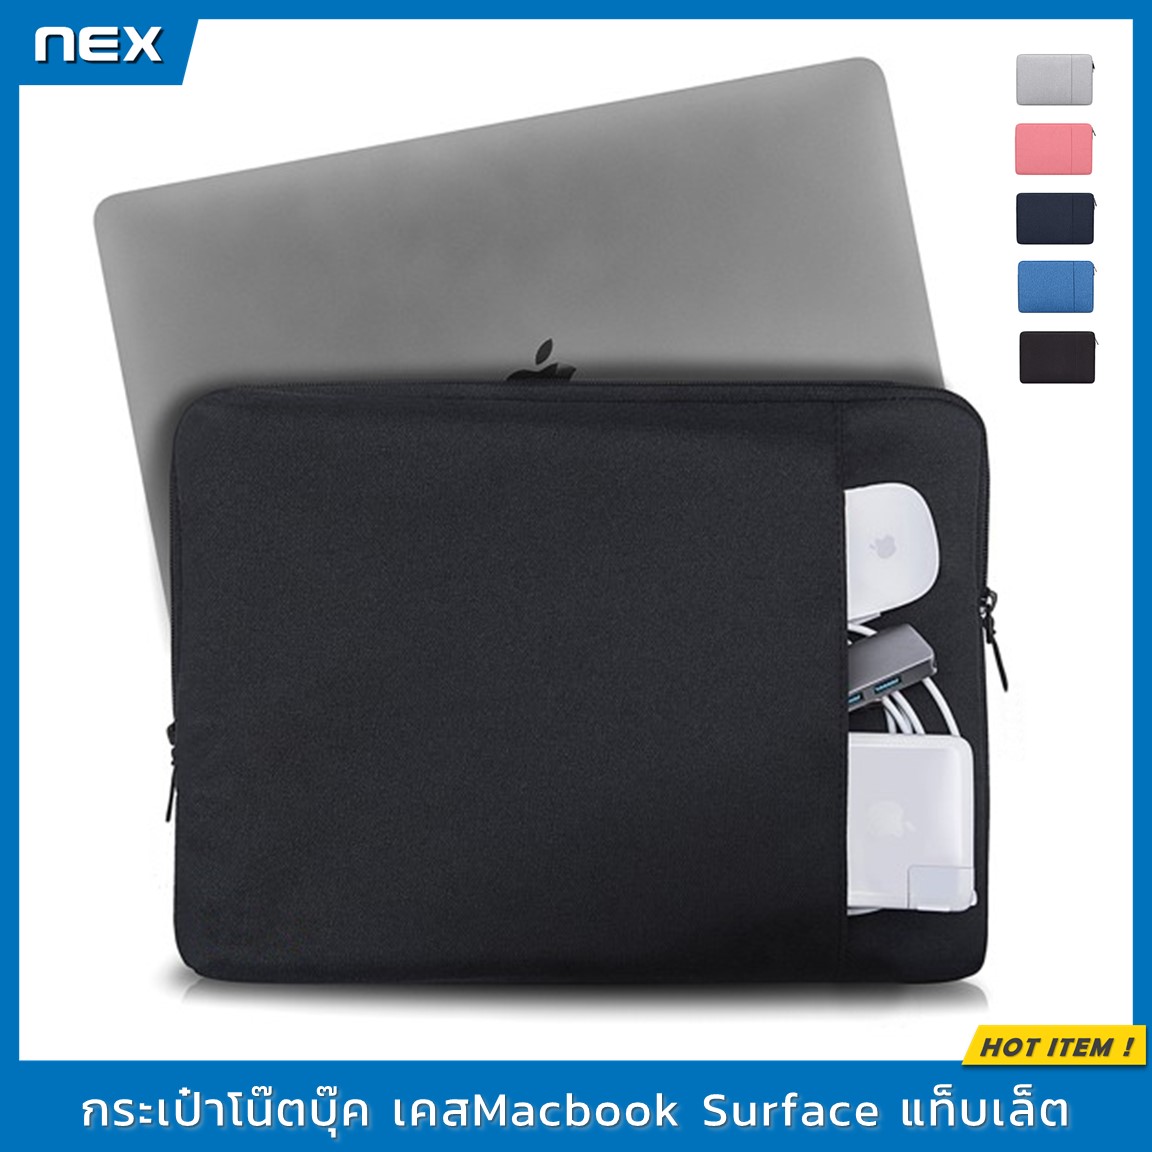 พร้อมส่ง!  NEX soft case เคสโน๊ตบุ๊ค กระเป๋าโน๊ตบุ๊ค  10  11  13.3  14  15.6 นิ้ว  เคสMacbook Air Pro   ซองแล็ปท็อป ซองใส่ไอแพด ซองผ้าใส่แท็บเล็ต Laptop Bag Macbook Case